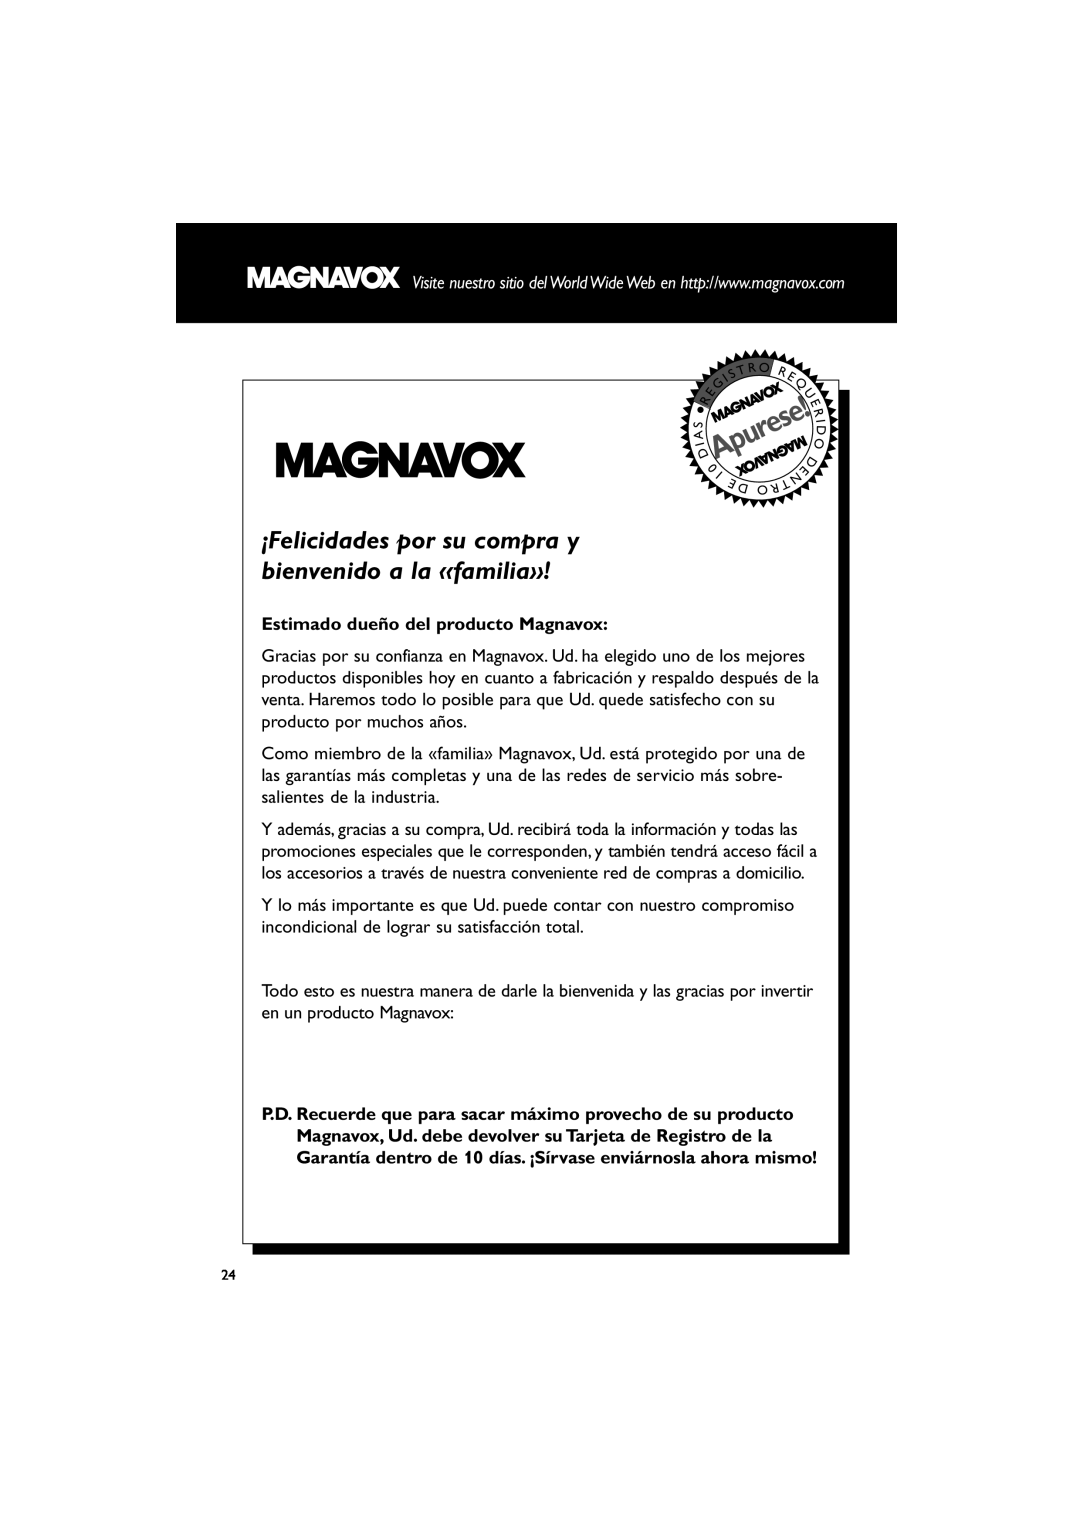 Magnavox MME100 warranty Estimado dueño del producto Magnavox, Apurese 